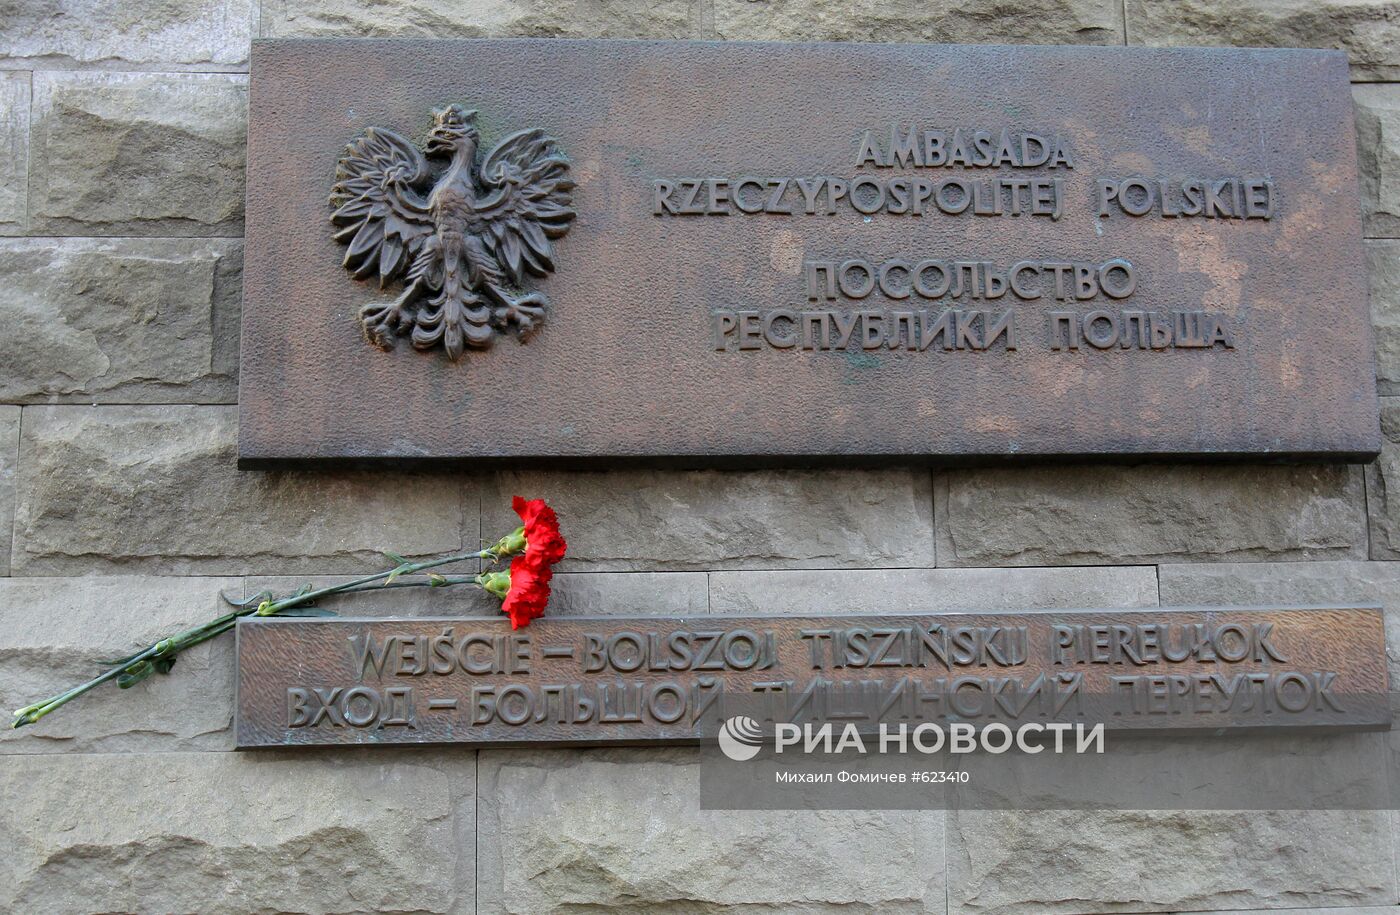 Цветы у посольства Польши в Москве